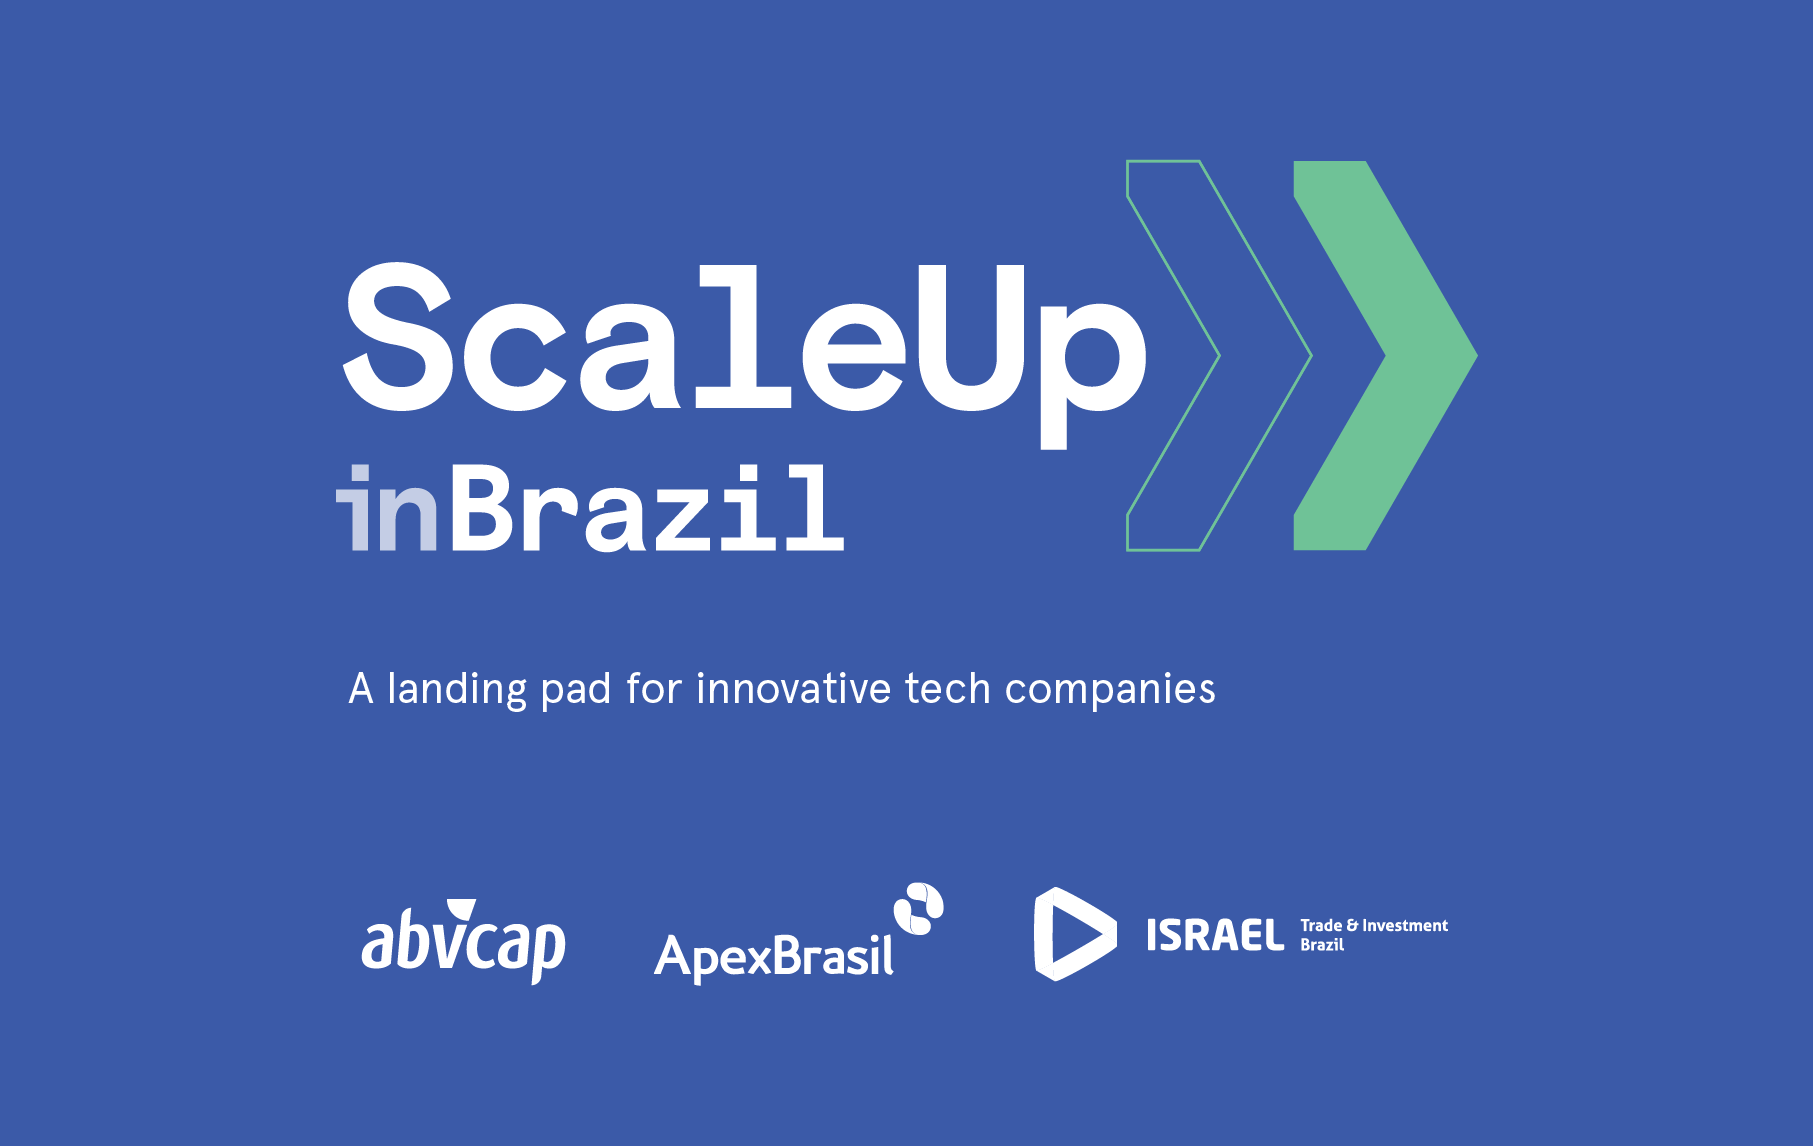 Em sua segunda edição o programa Scaleup inBrazil seleciona 10 empresas israelenses que prometem turbinar o ecossistema de startups brasileiro